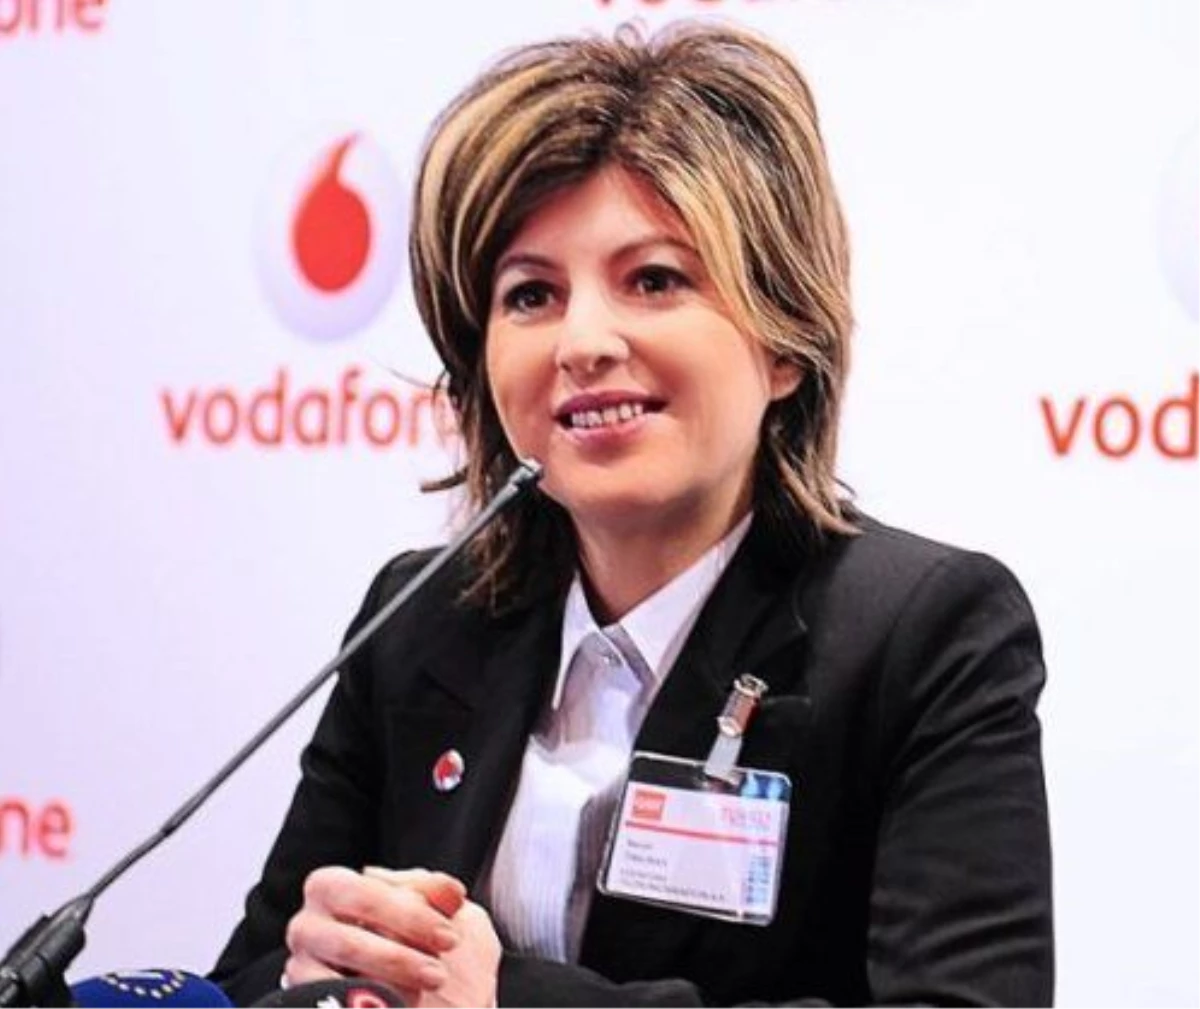 Düzeltme "Vodafone Türkiye İcra Kurulu Başkanı Serpil Timuray." Başlıklı Haberimizin 9.Paragrafının...